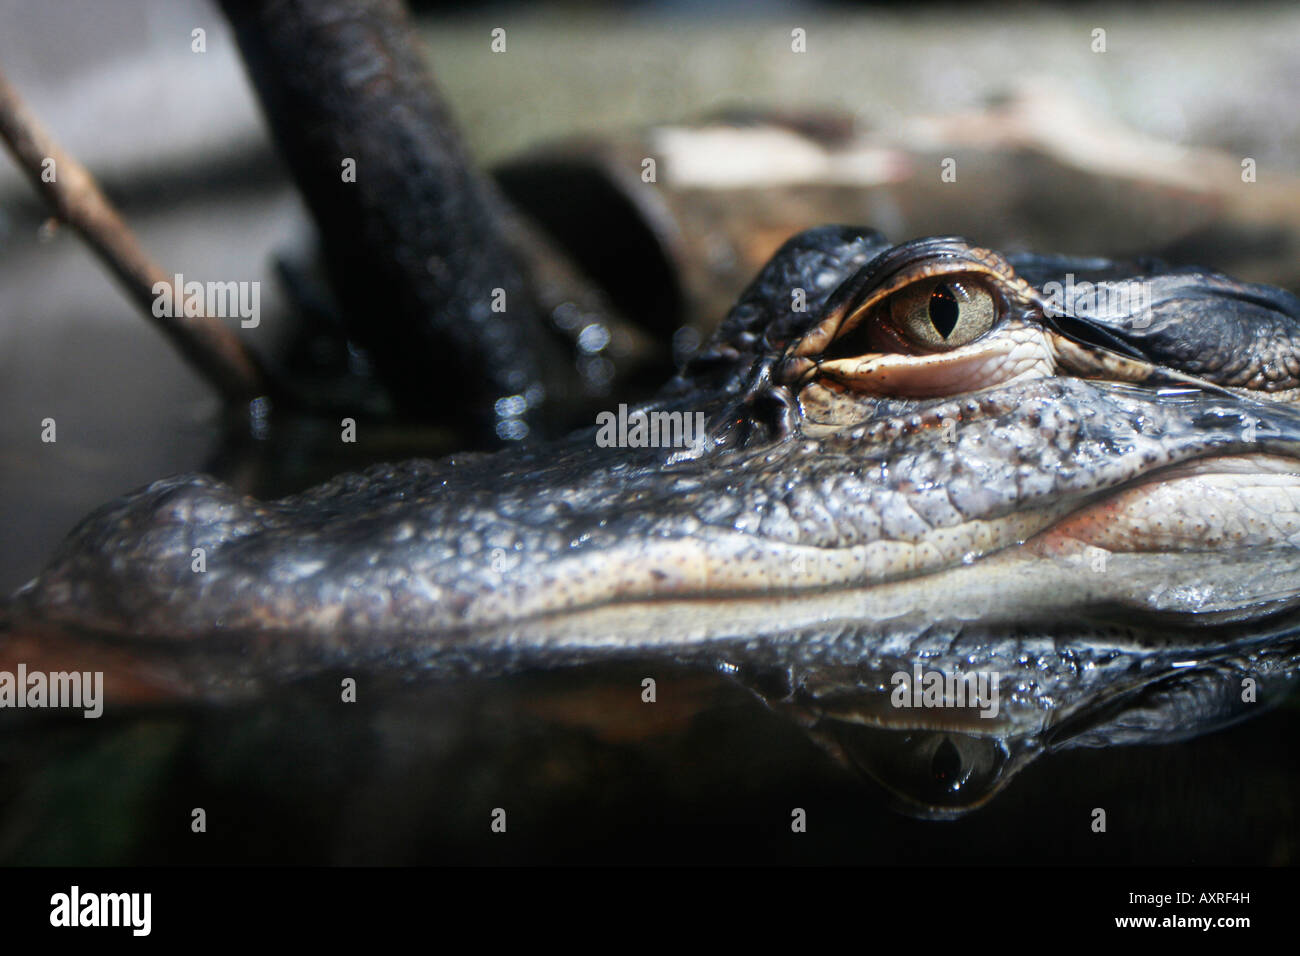 Alligator in the River scout exhibit at the Georgia Aquarium in Atlanta Stock Photo